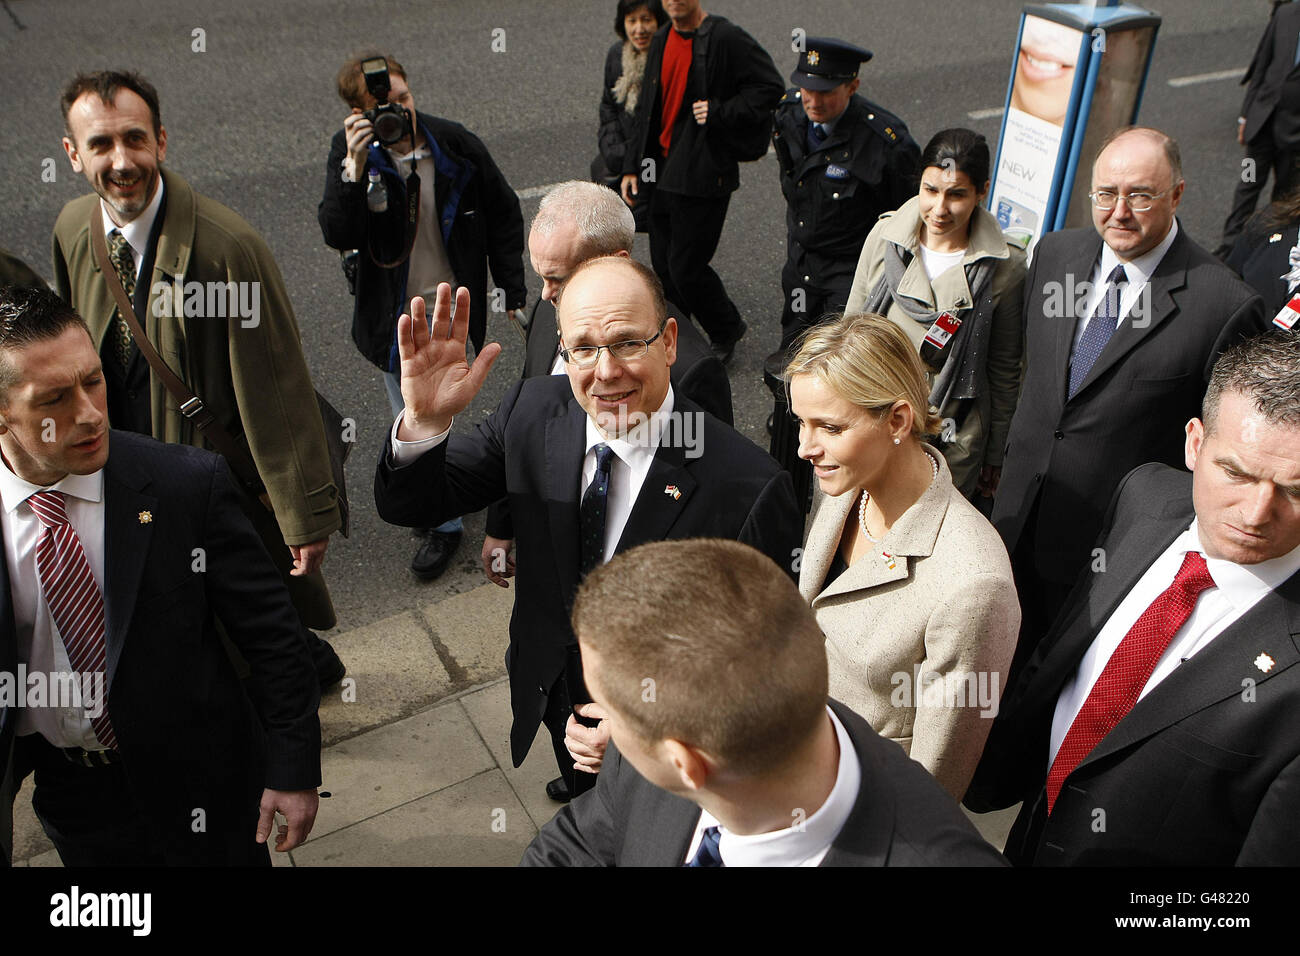 Prinz Albert von Monaco II. Und seine Verlobte Charlene Wittstock (Mitte) verlassen das National Museum of Dublin zu Beginn eines zweitägigen Staatsbesuchs nach Irland. Stockfoto